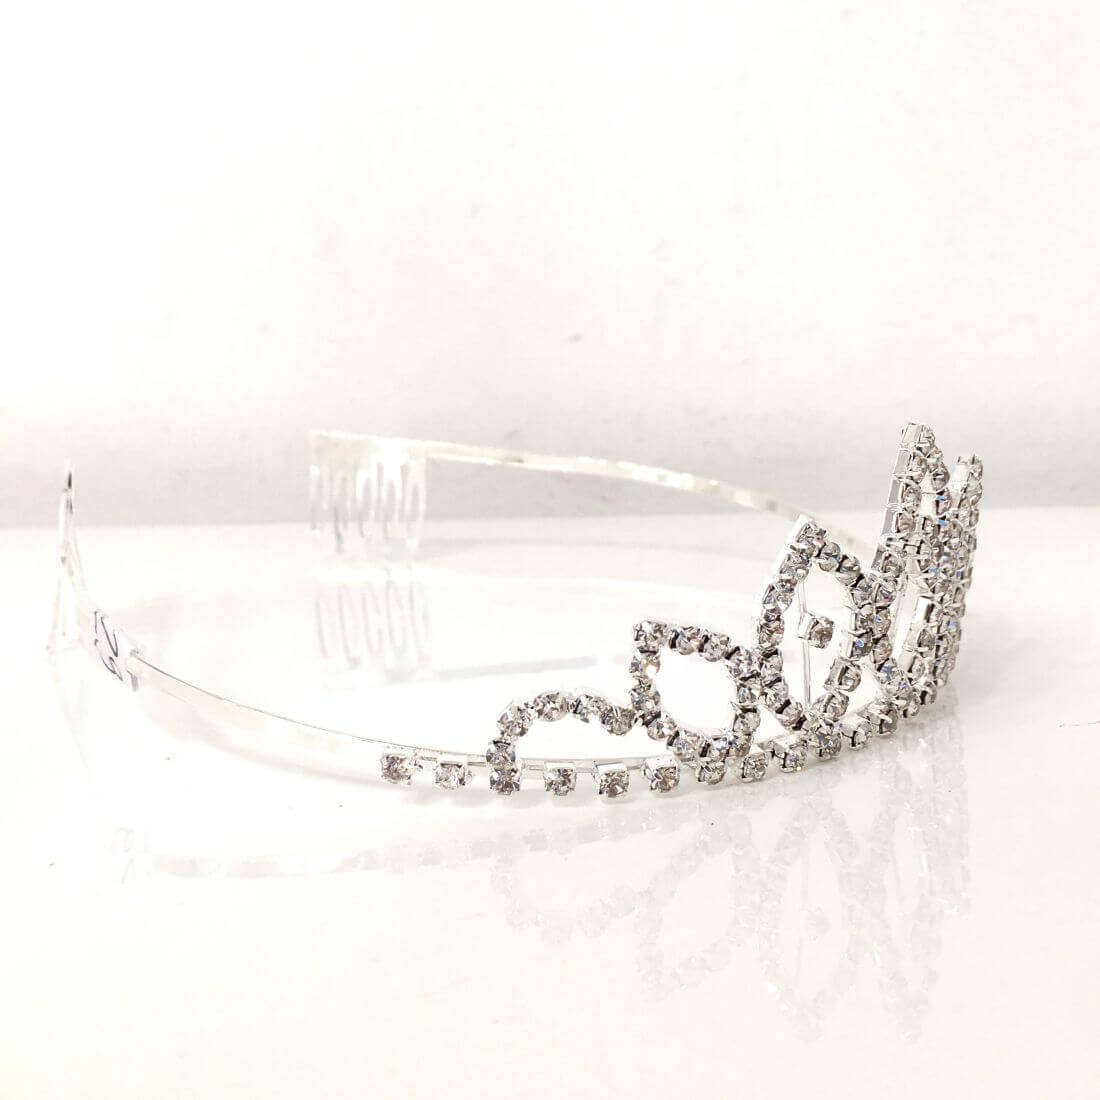 Coroncina tiara castoni argento